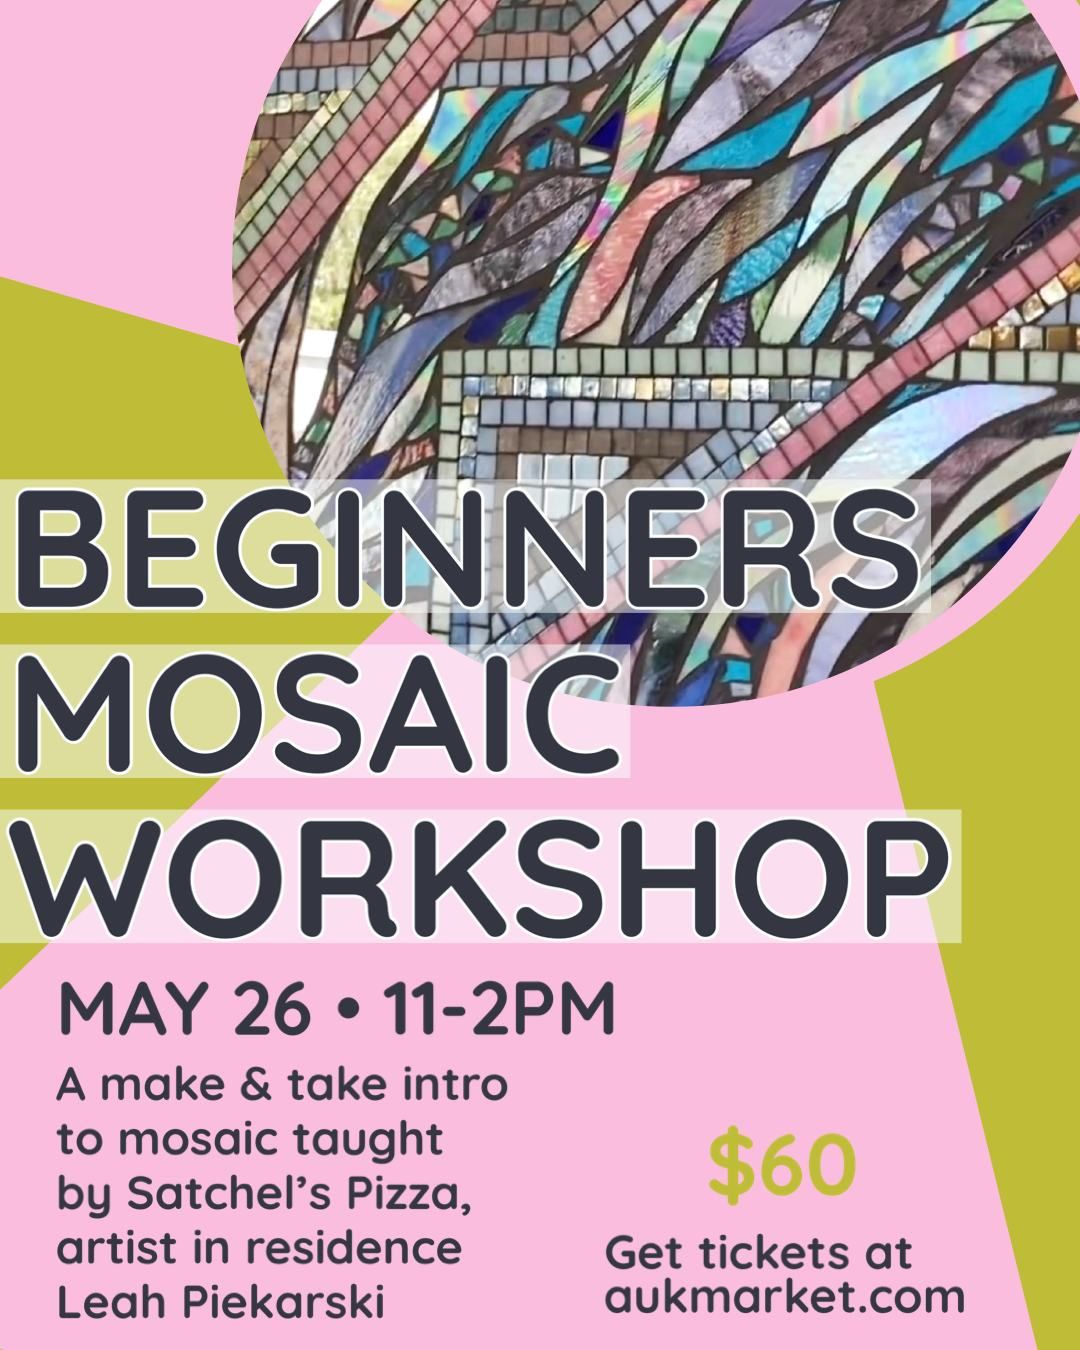 Beginners Mosaic Workshop!